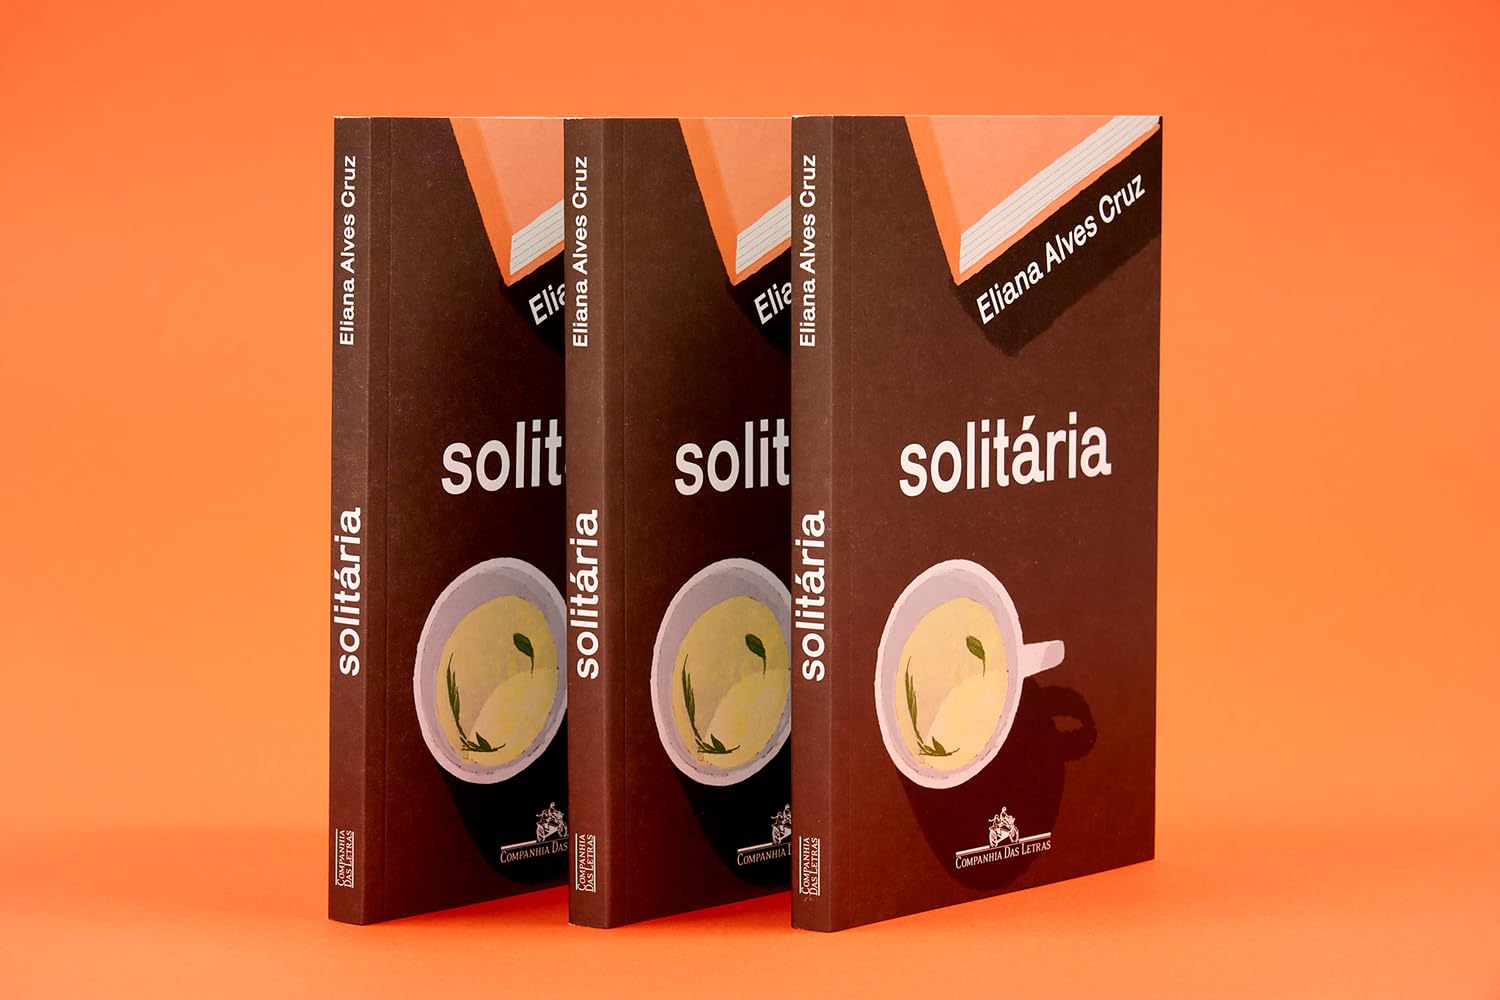 Edição do livro "Solitária", publicado pela Companhia das Letras